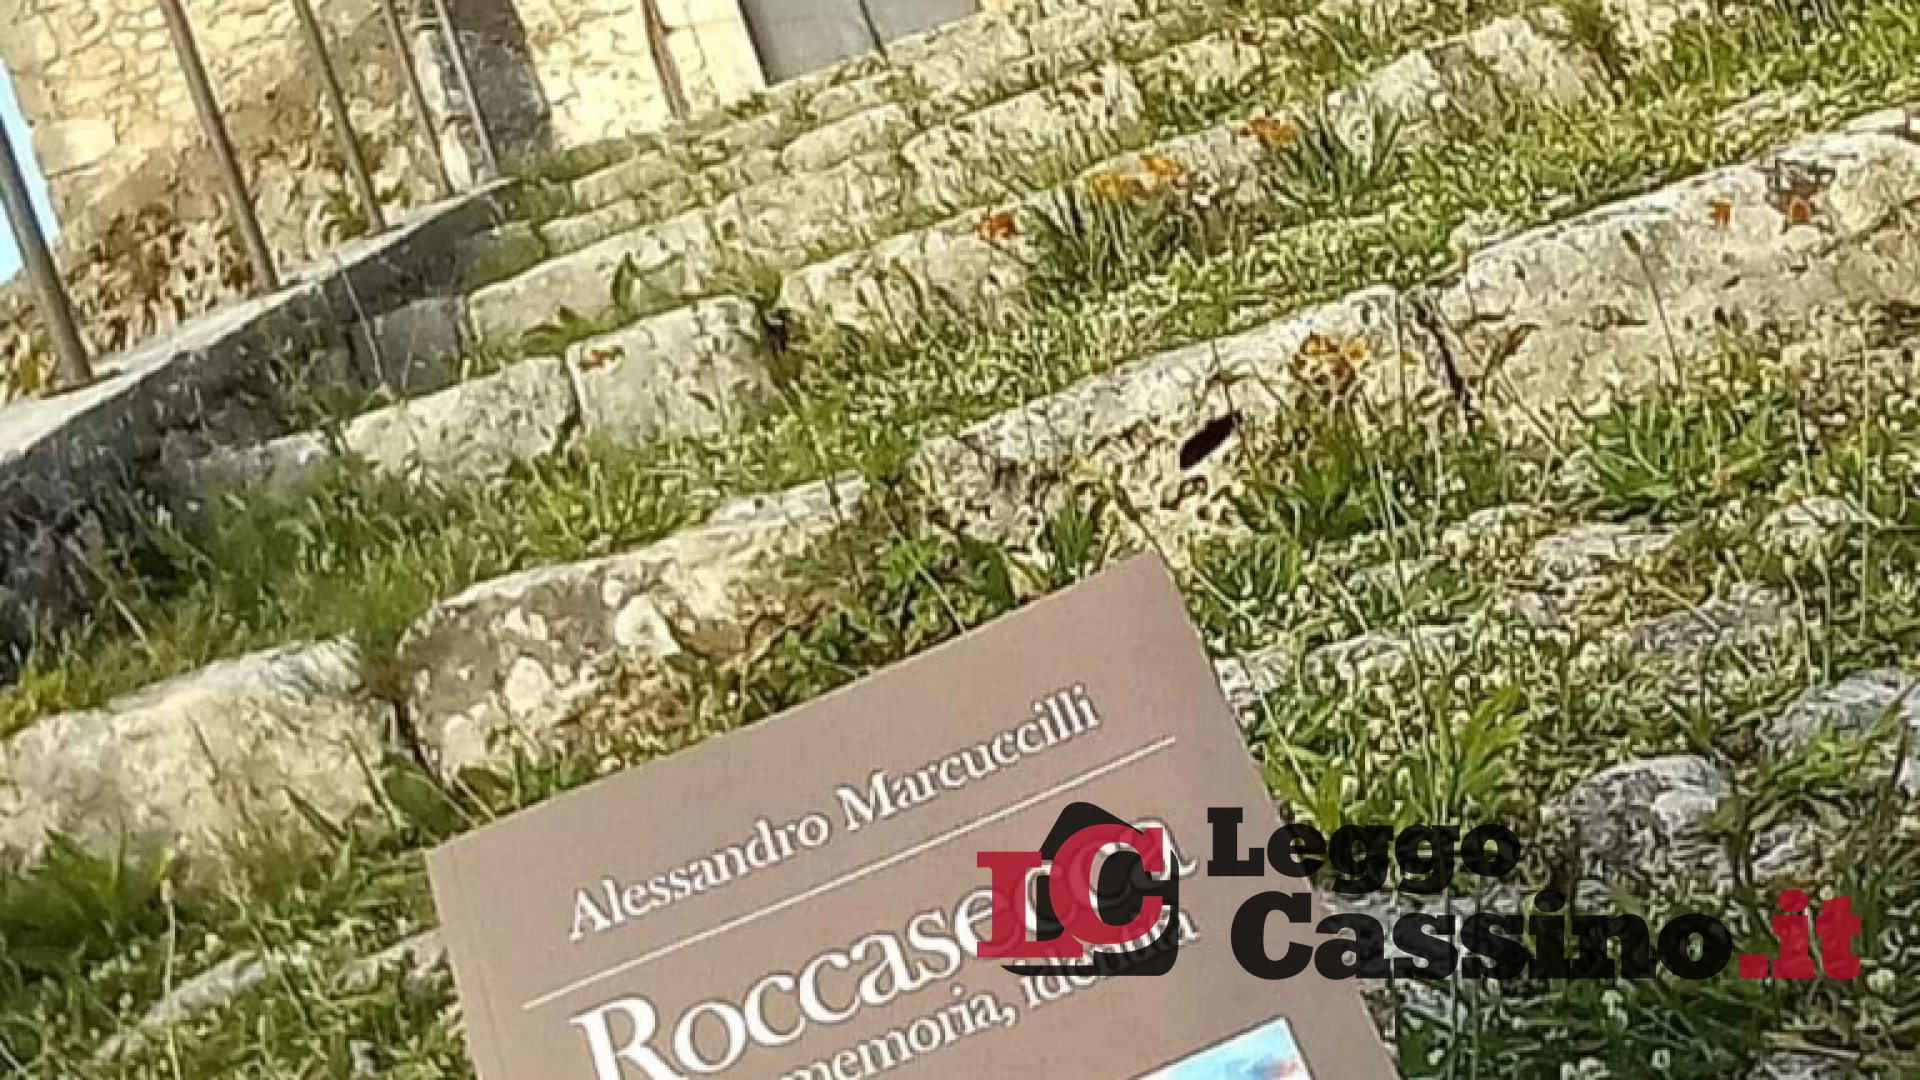 "Roccasecca. Storia, memoria, identità". Marcuccilli presenta il suo libro